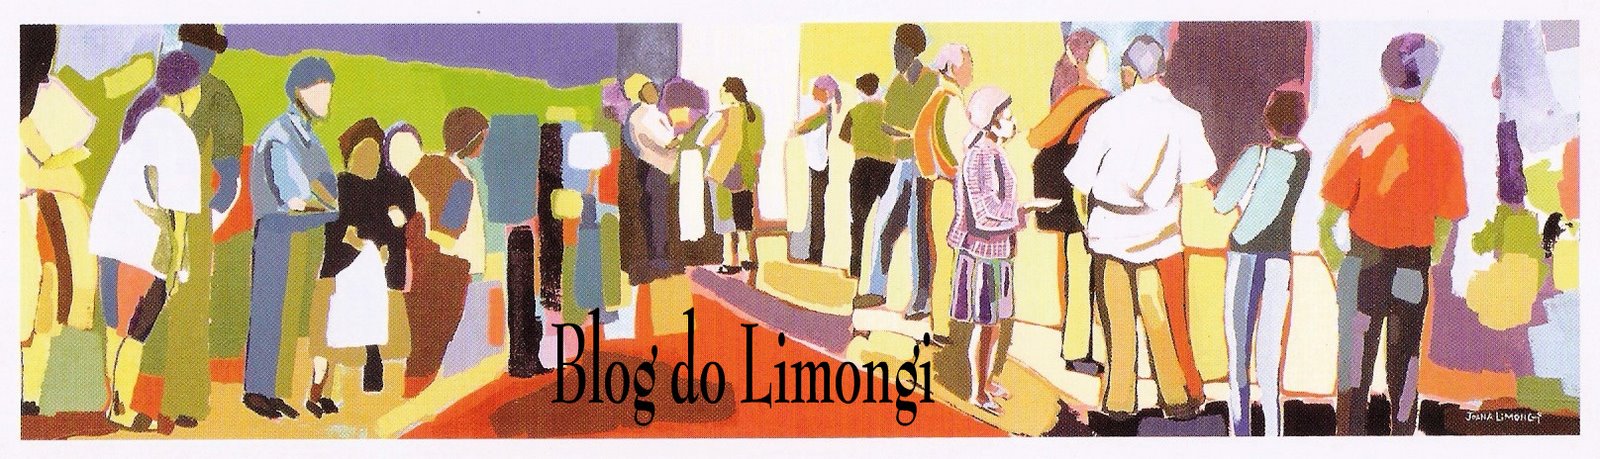 Blog do Limongi